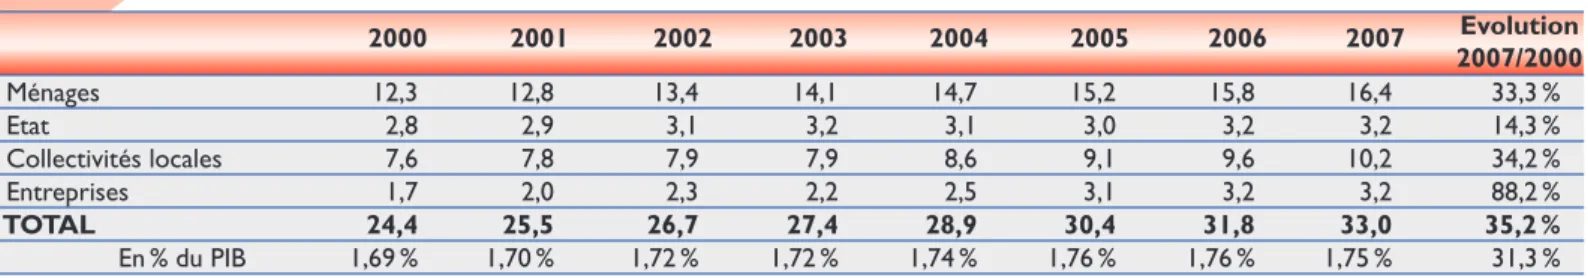 Tableau 1 La dépense sportive en France de 2000 à 2007 (milliards d’euros courants)